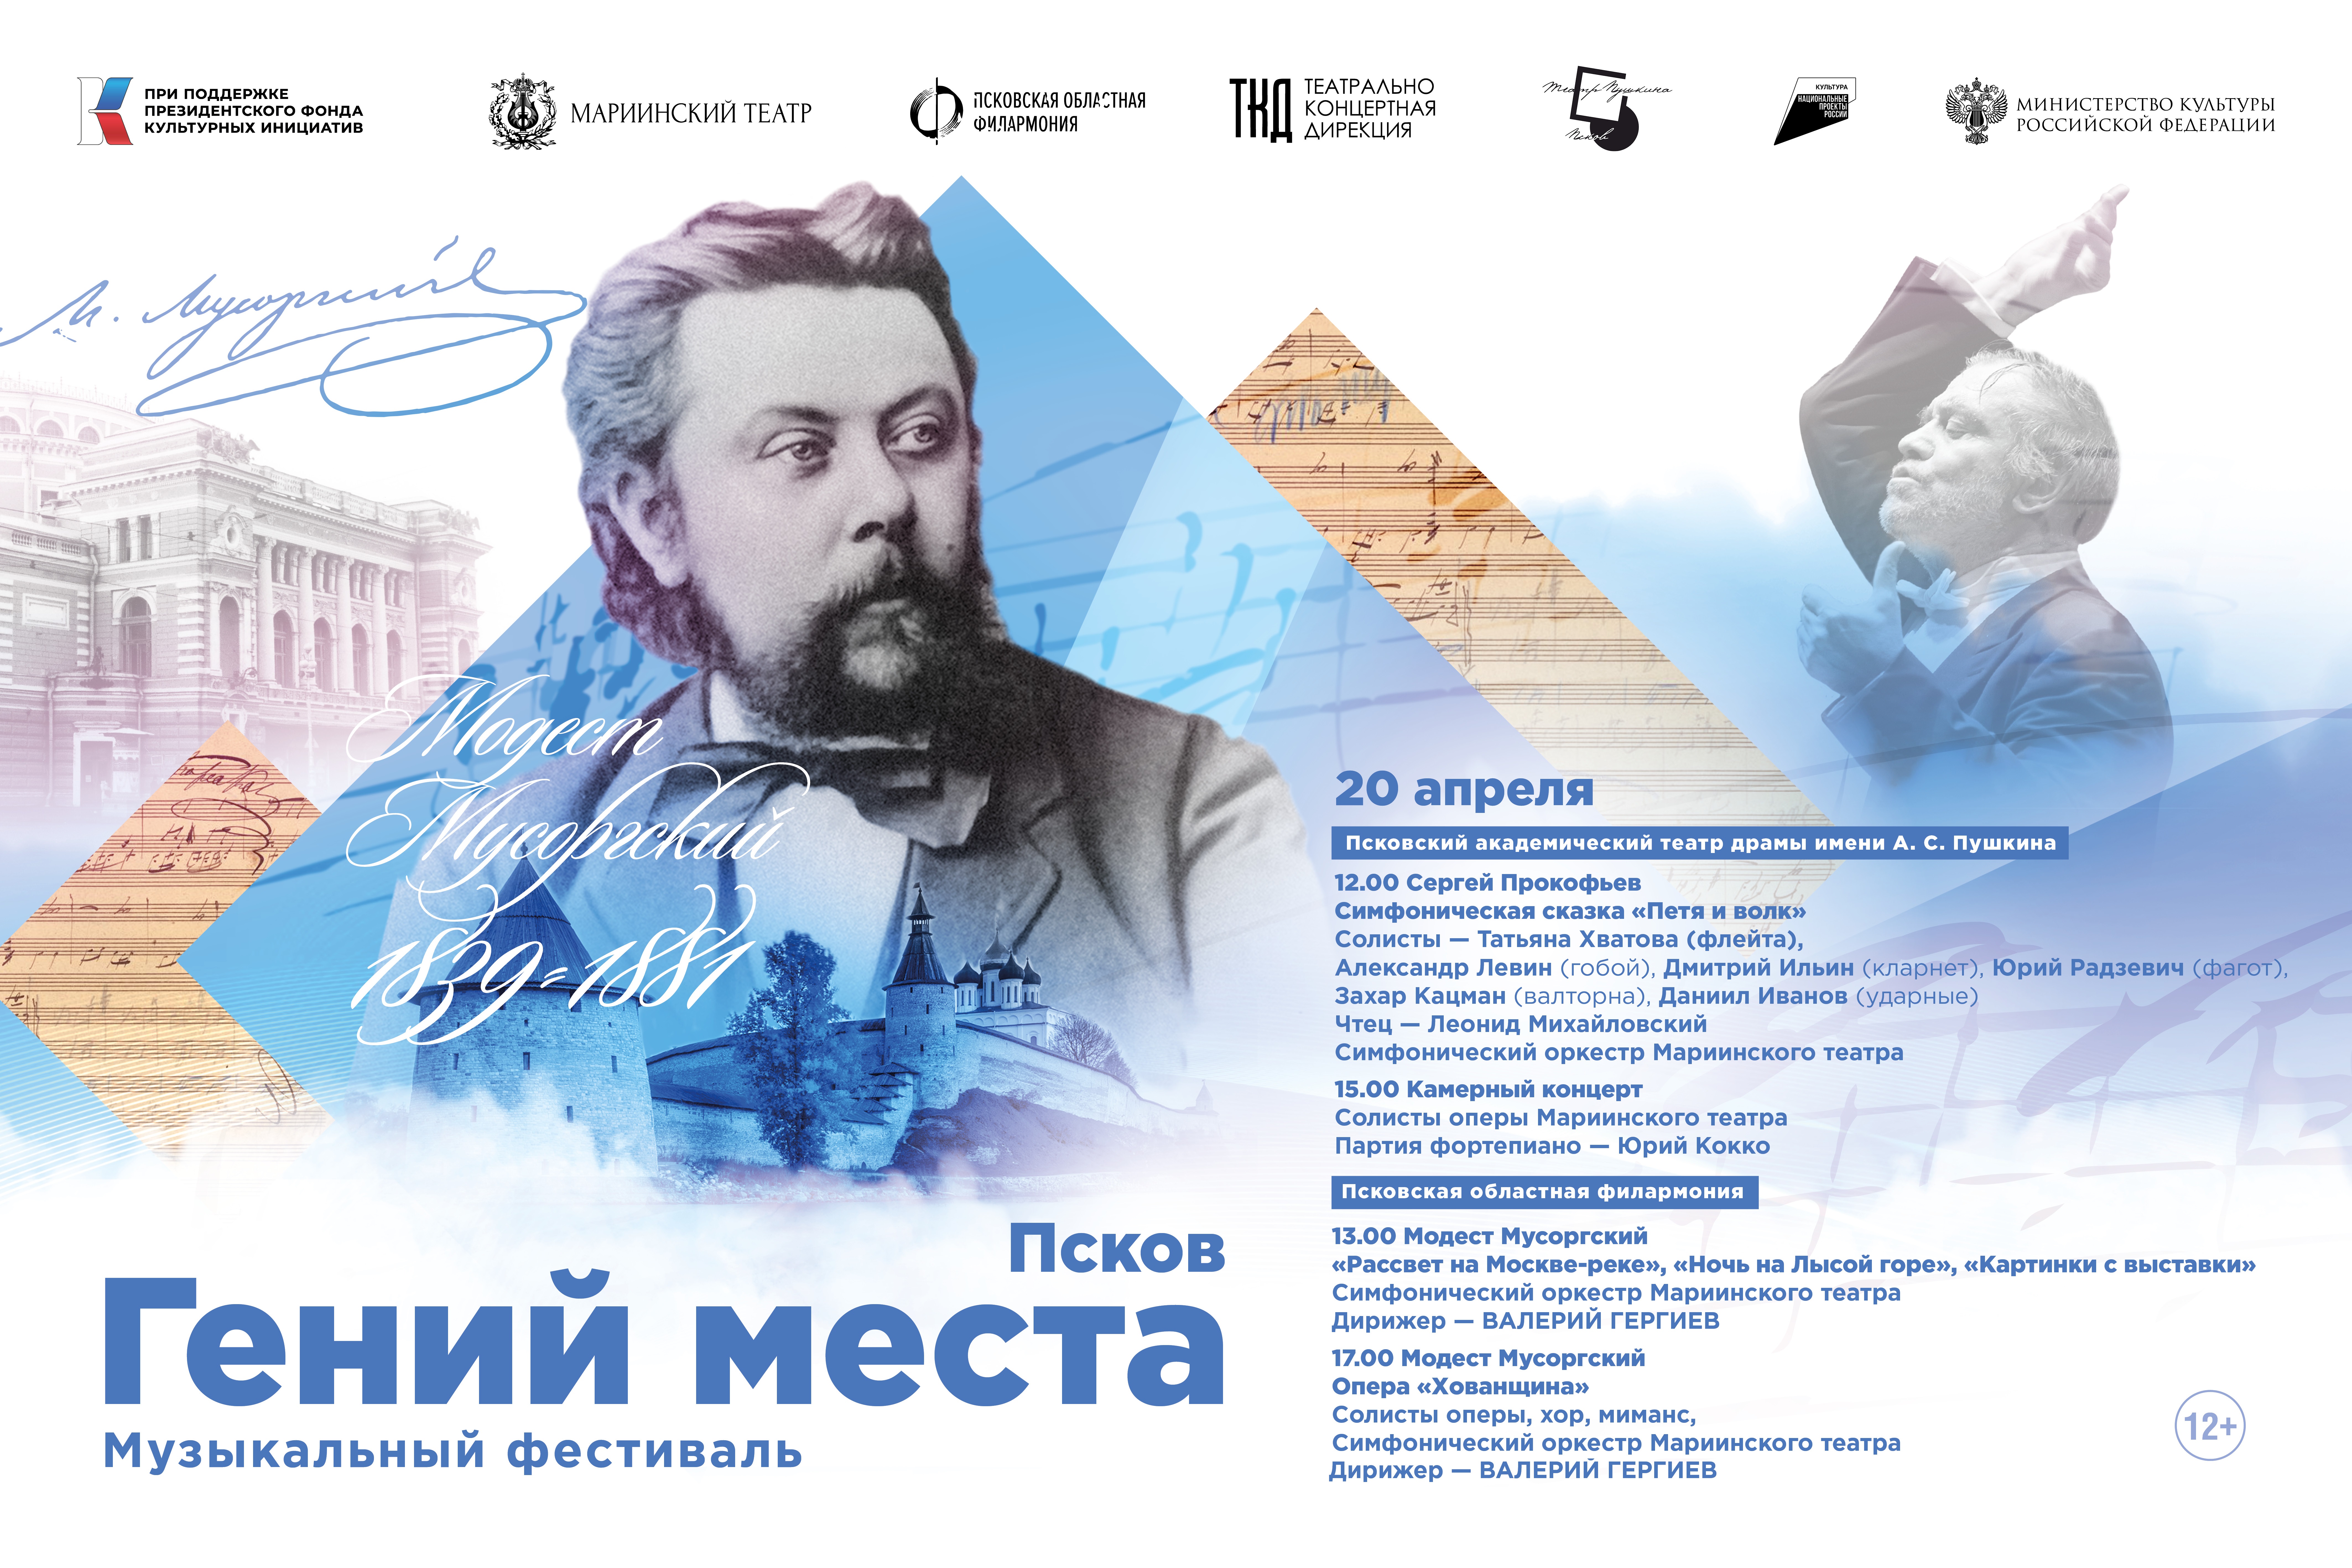 Валерий Гергиев и Мариинский театр продолжают фестиваль «Гений места» на родине Модеста Мусоргского